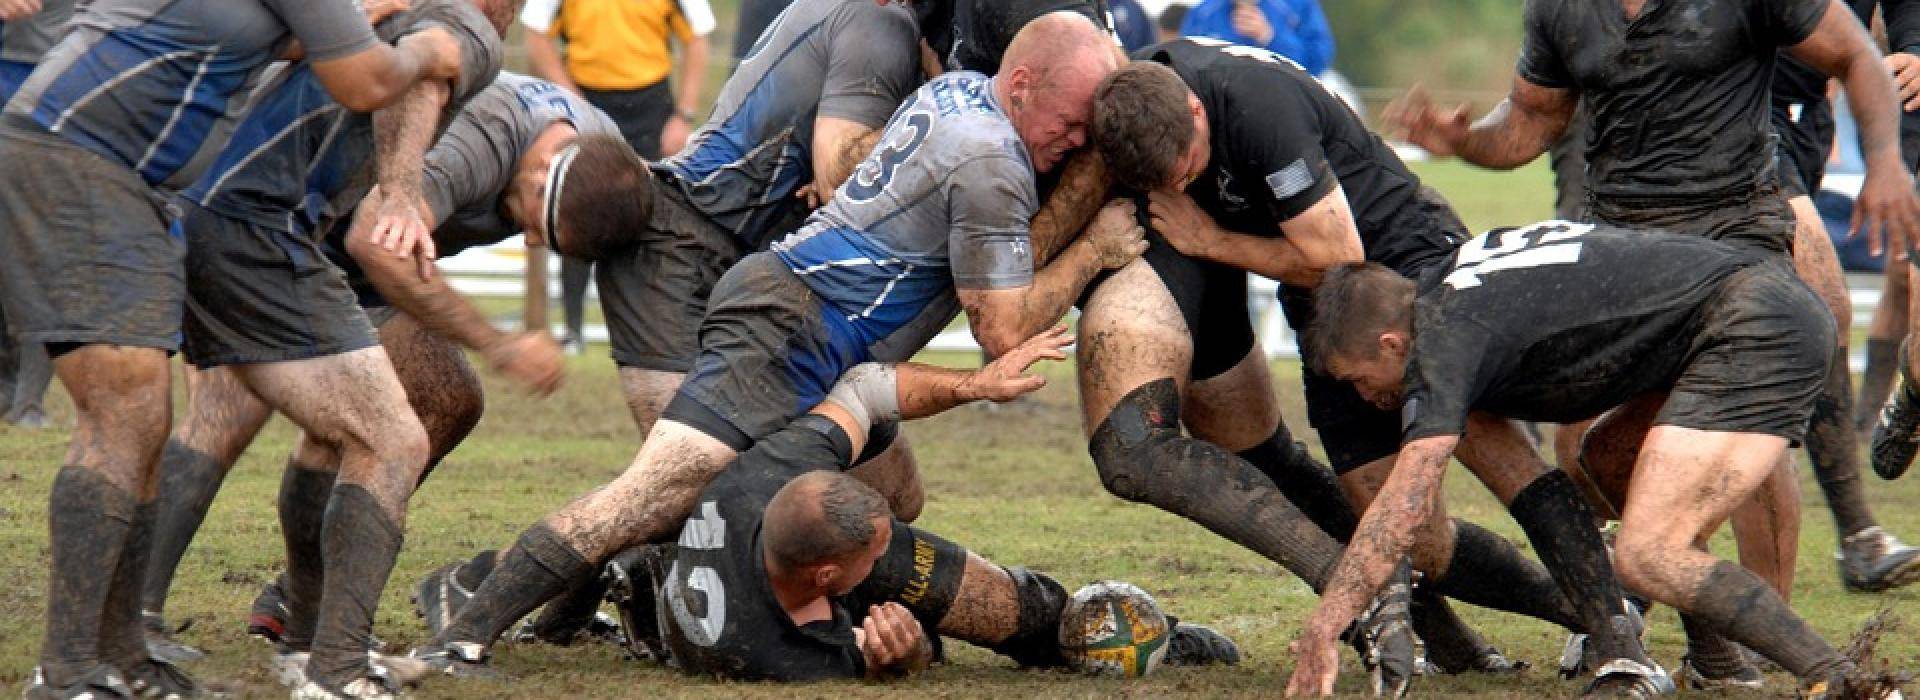 rugby-sport-contatto-urti-protezioni-sicurezza